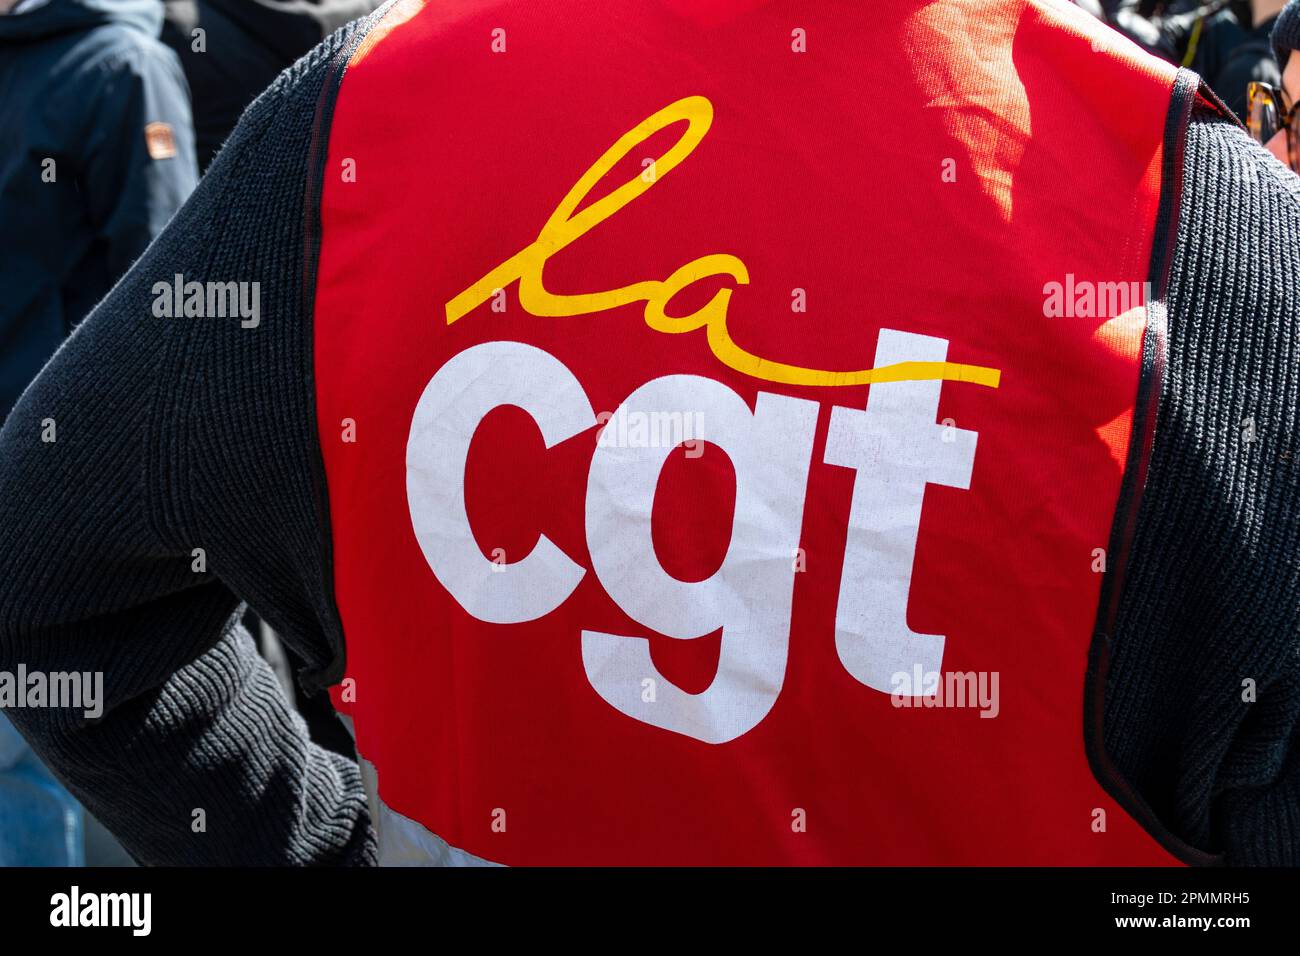 Gros plan du logo de l'organisation syndicale française CGT (Confédération générale du travail) imprimé sur une veste rouge photographiée lors d'une manifestation Banque D'Images